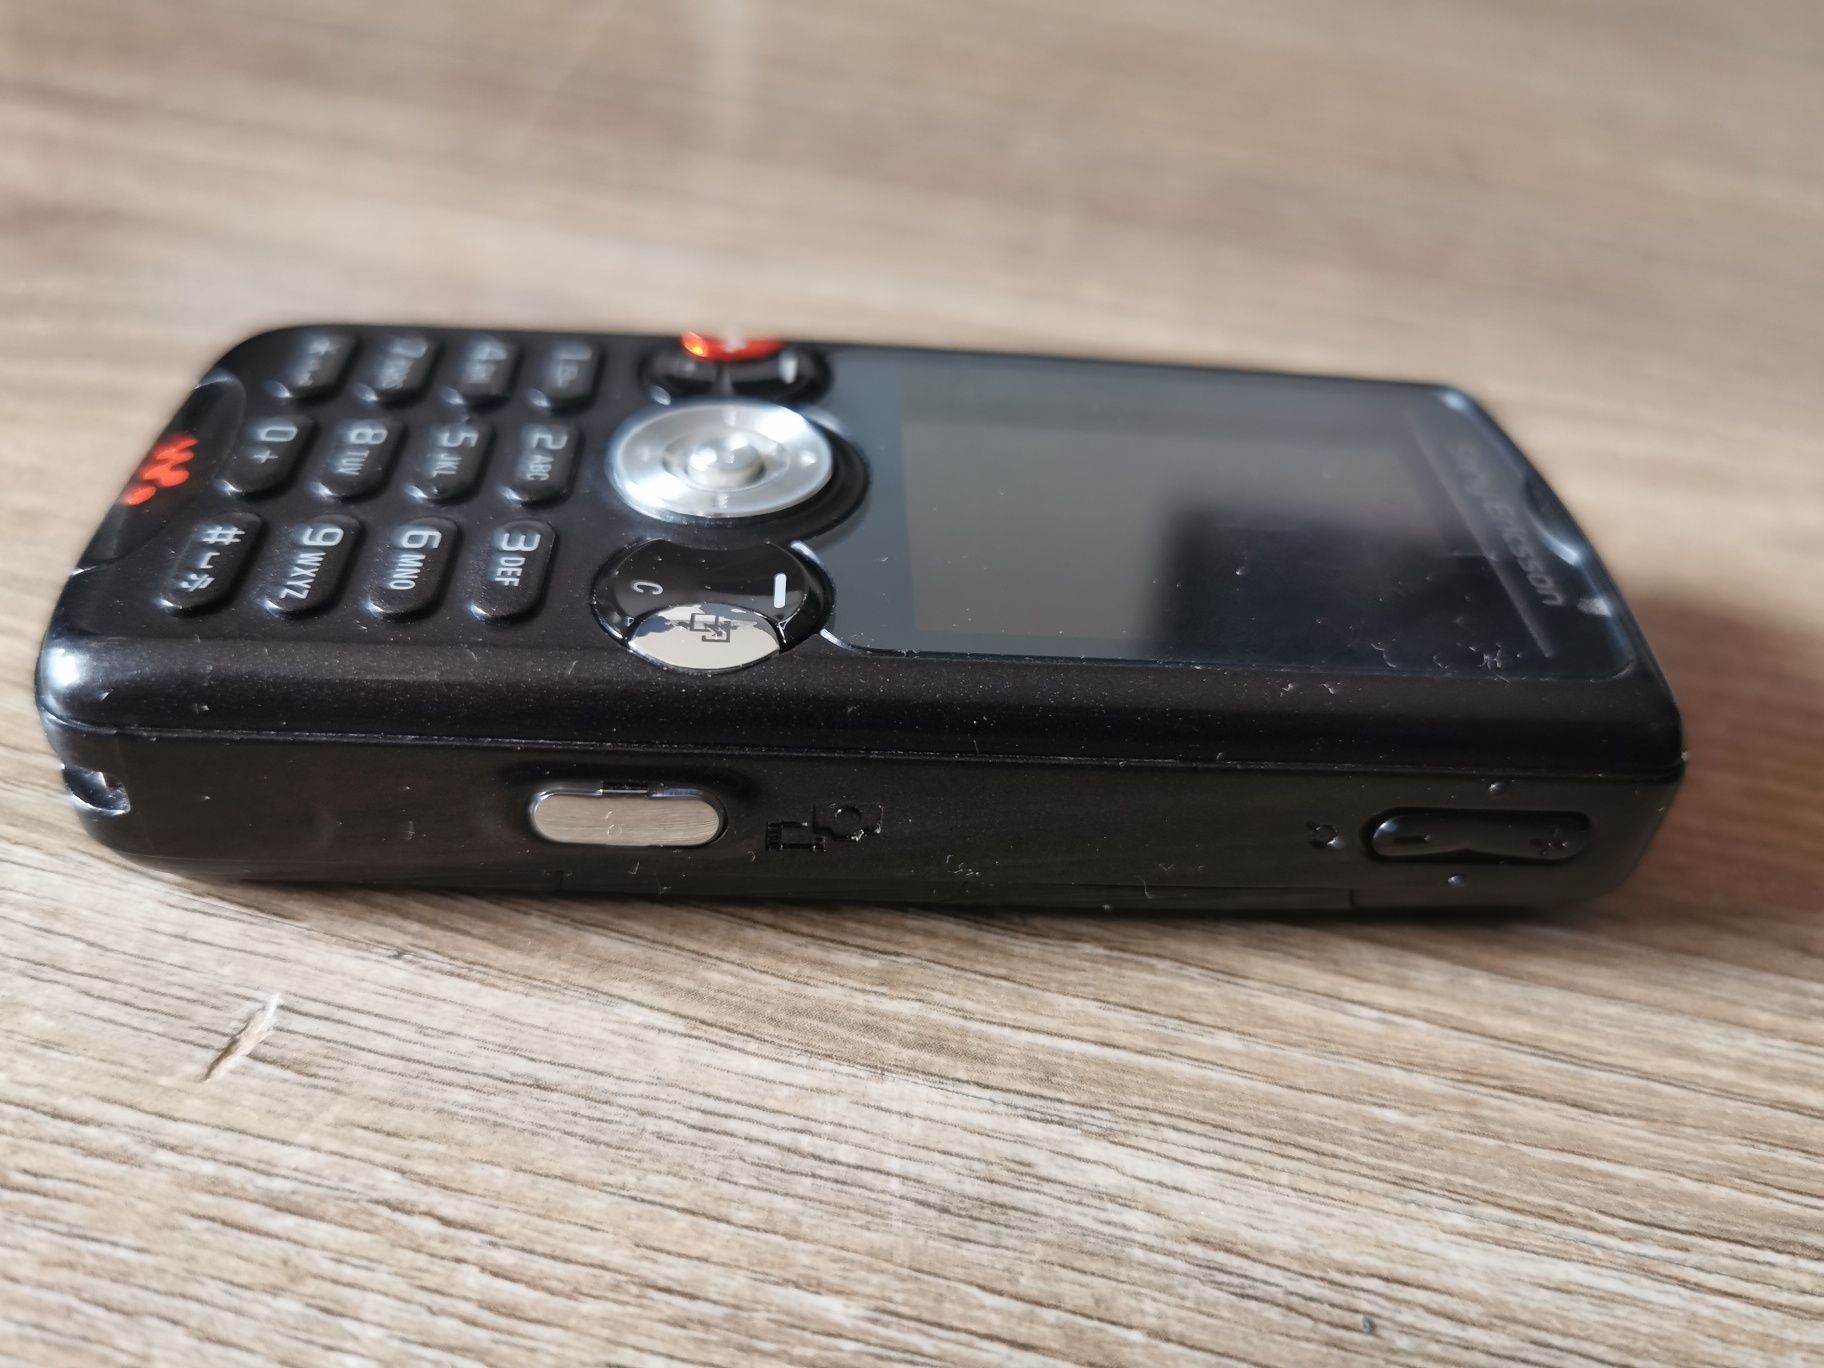 Sony Ericsson W810i walkman